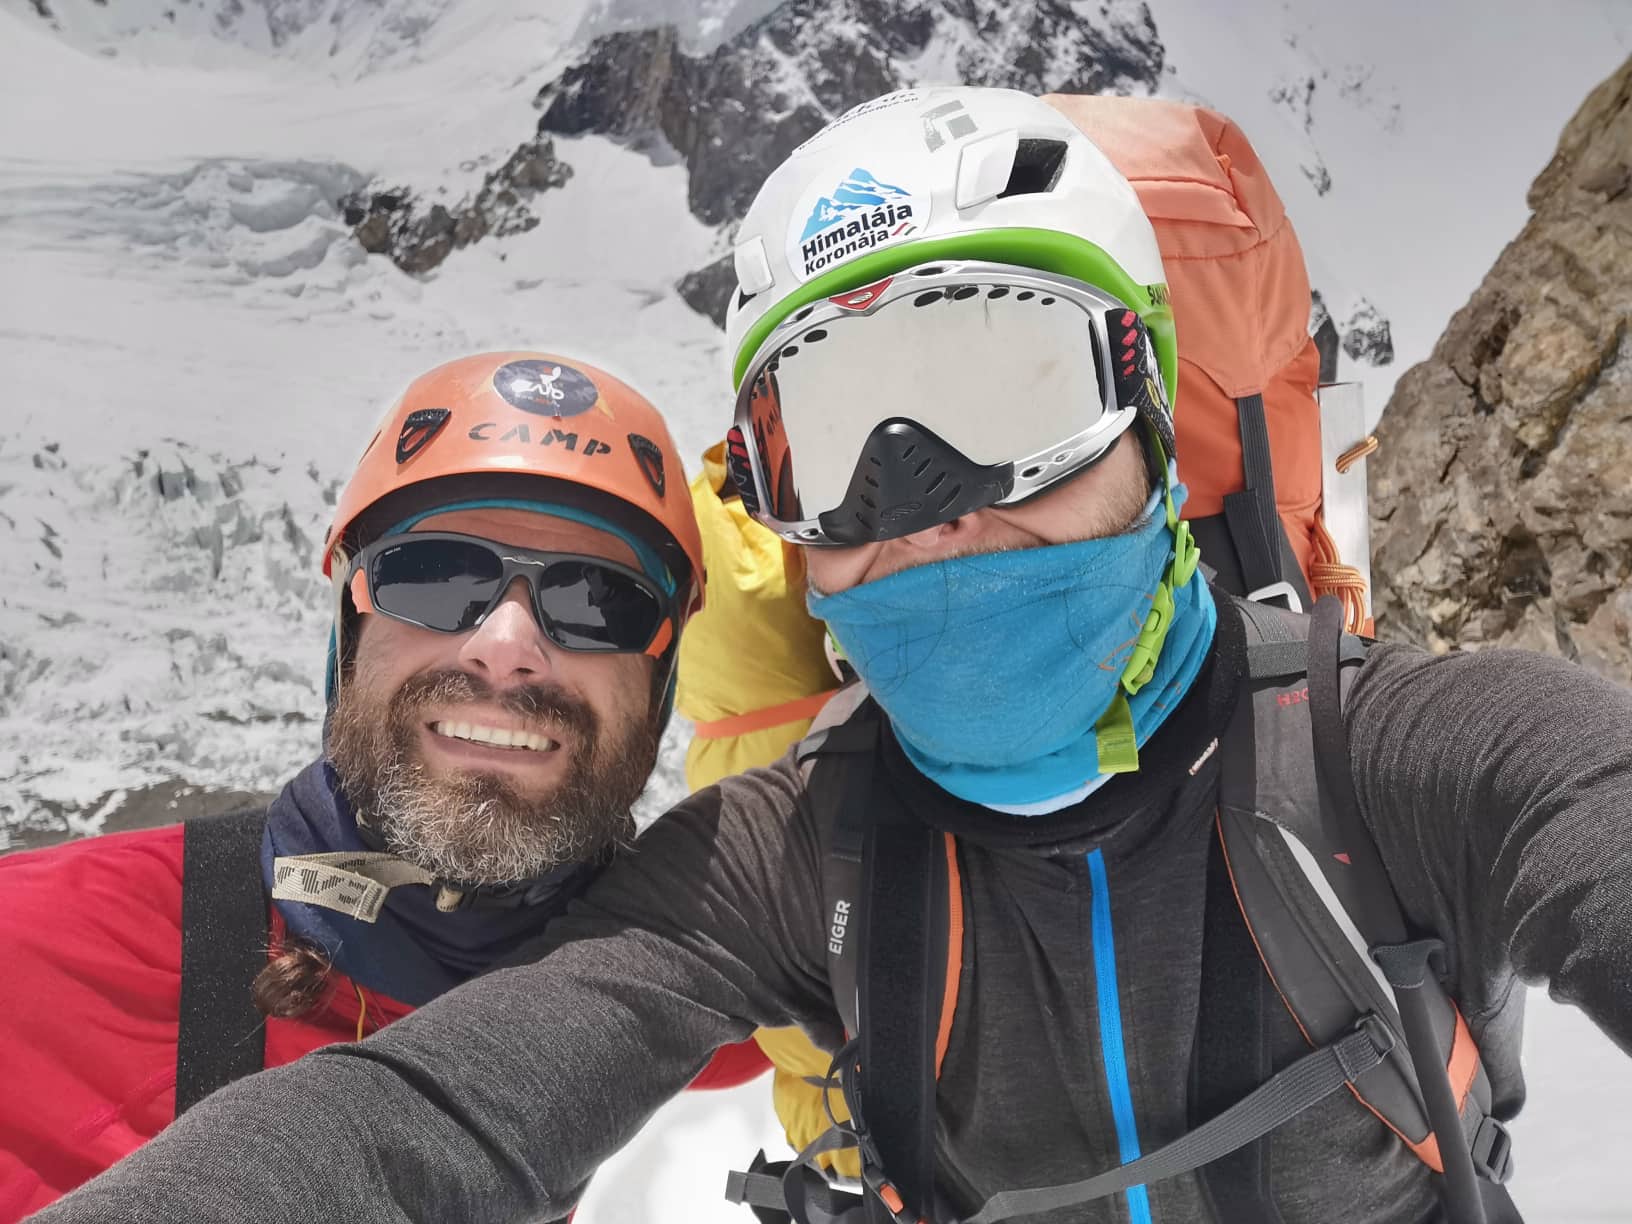 Klein Dávid és Suhajda Szilárd Forrás: Magyar K2 expedíció 2019